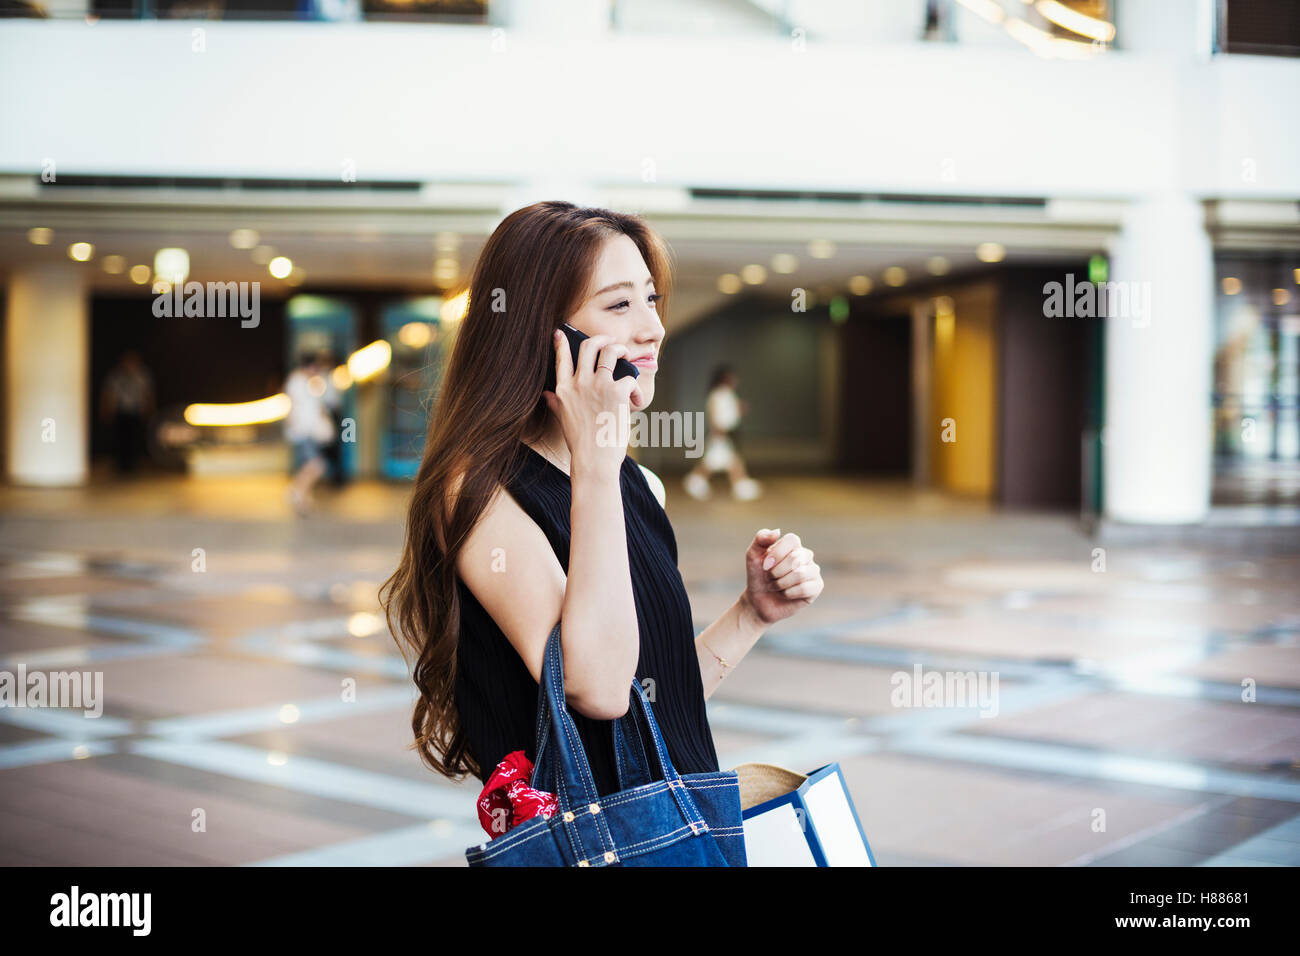 Giovane donna con capelli lunghi marrone in un centro commerciale, sul telefono. Foto Stock